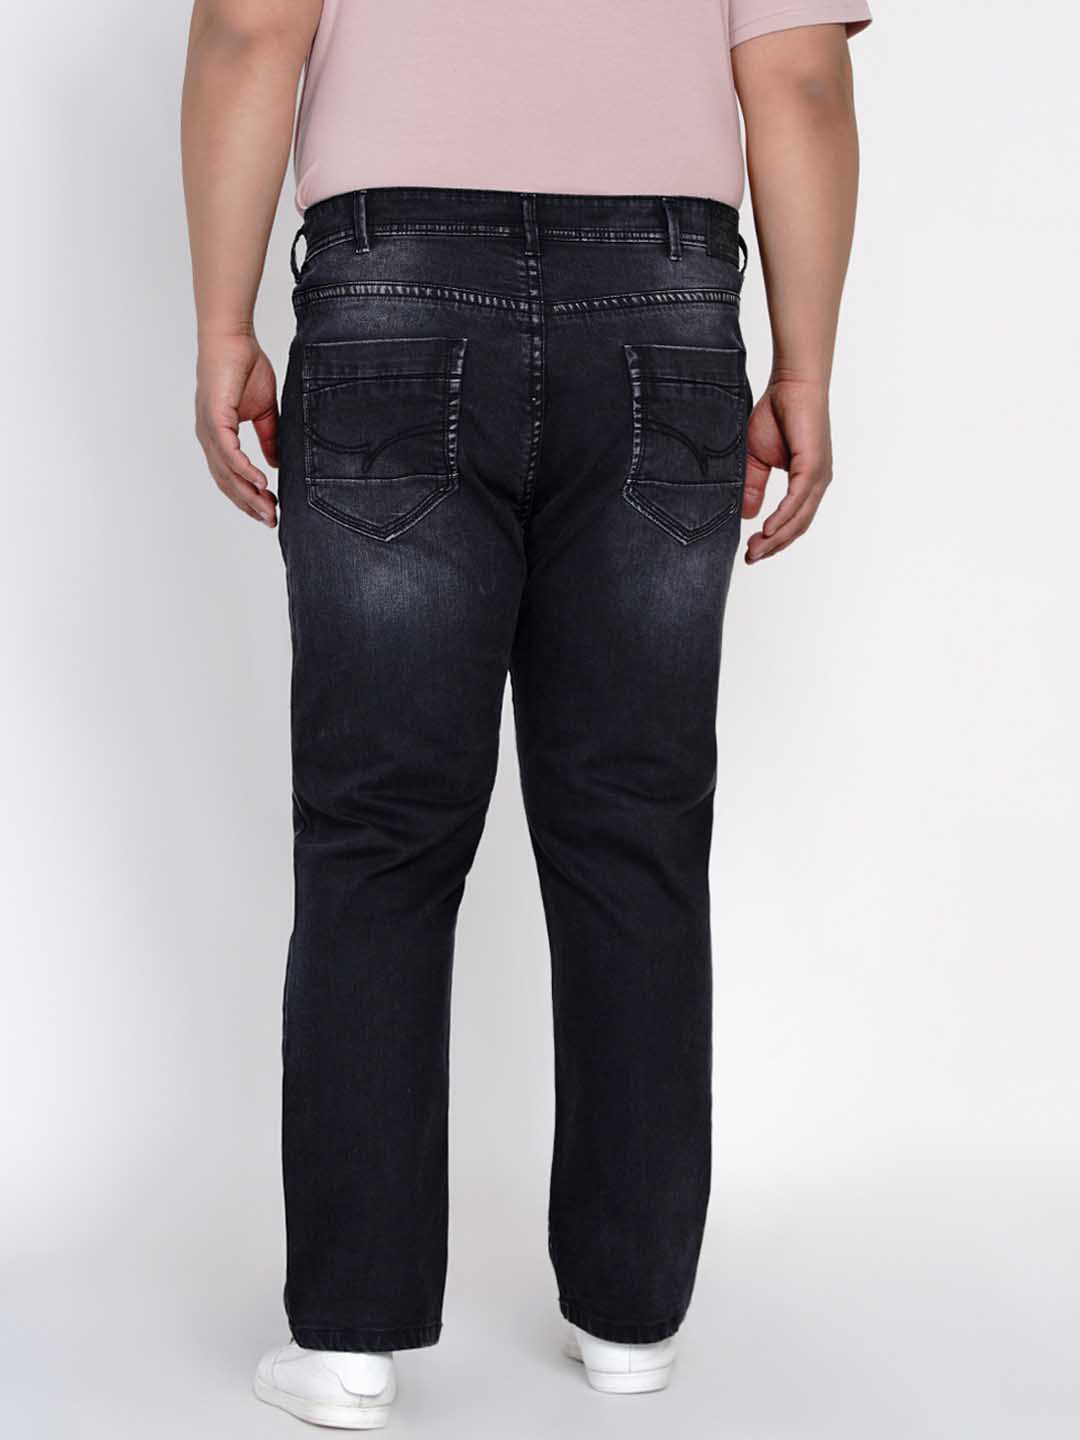 bottomwear/jeans/JPJ12119/jpj12119-4.jpg